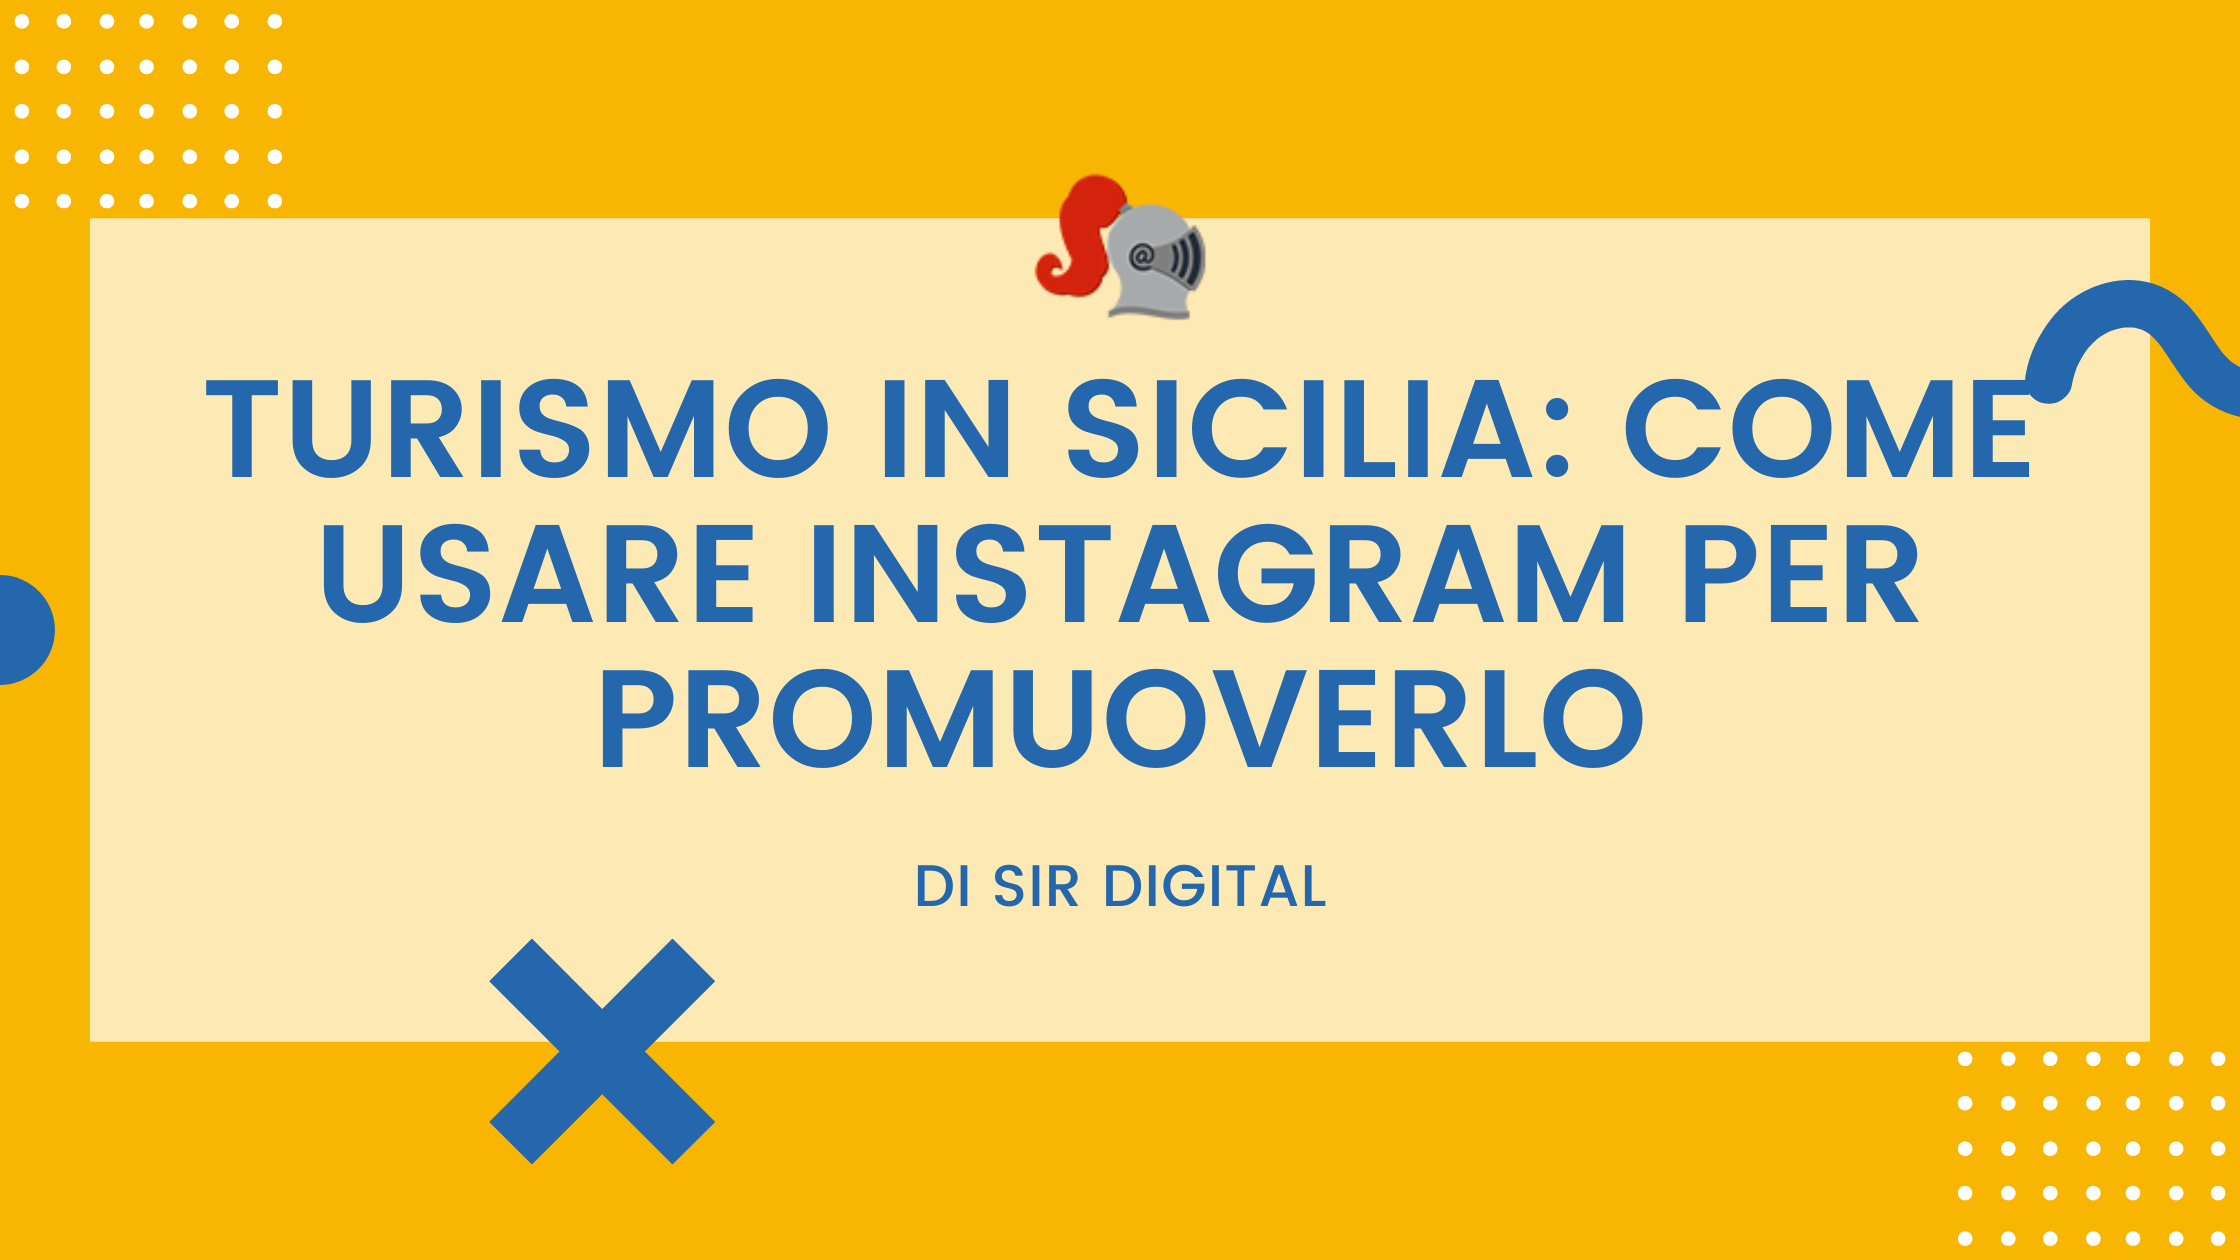 turismo in sicilia: come promuoverlo con instagram